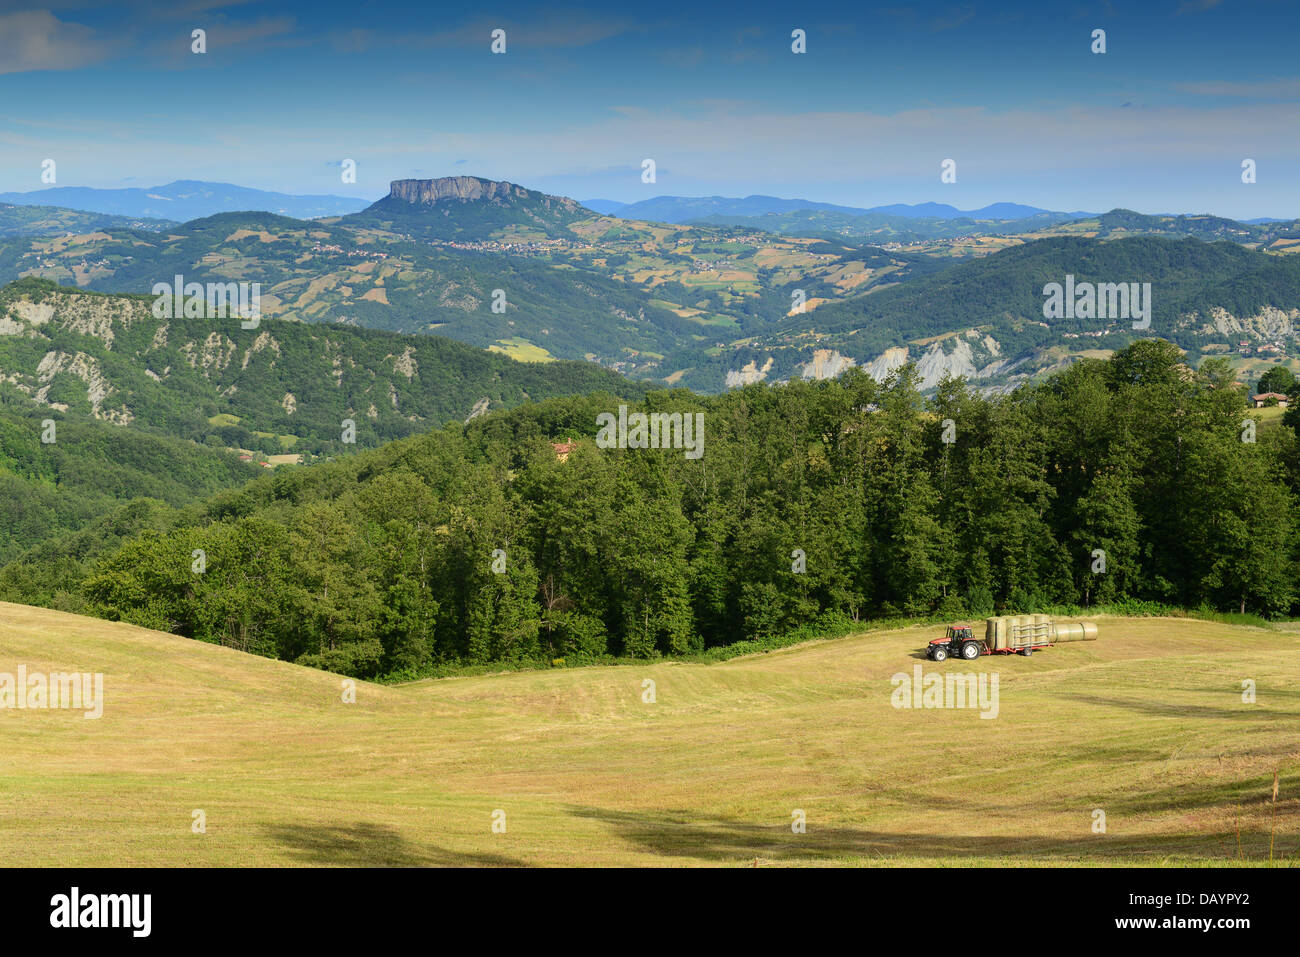 Reggio Emilia hills in the Italian region Emilia-Romagna Stock Photo